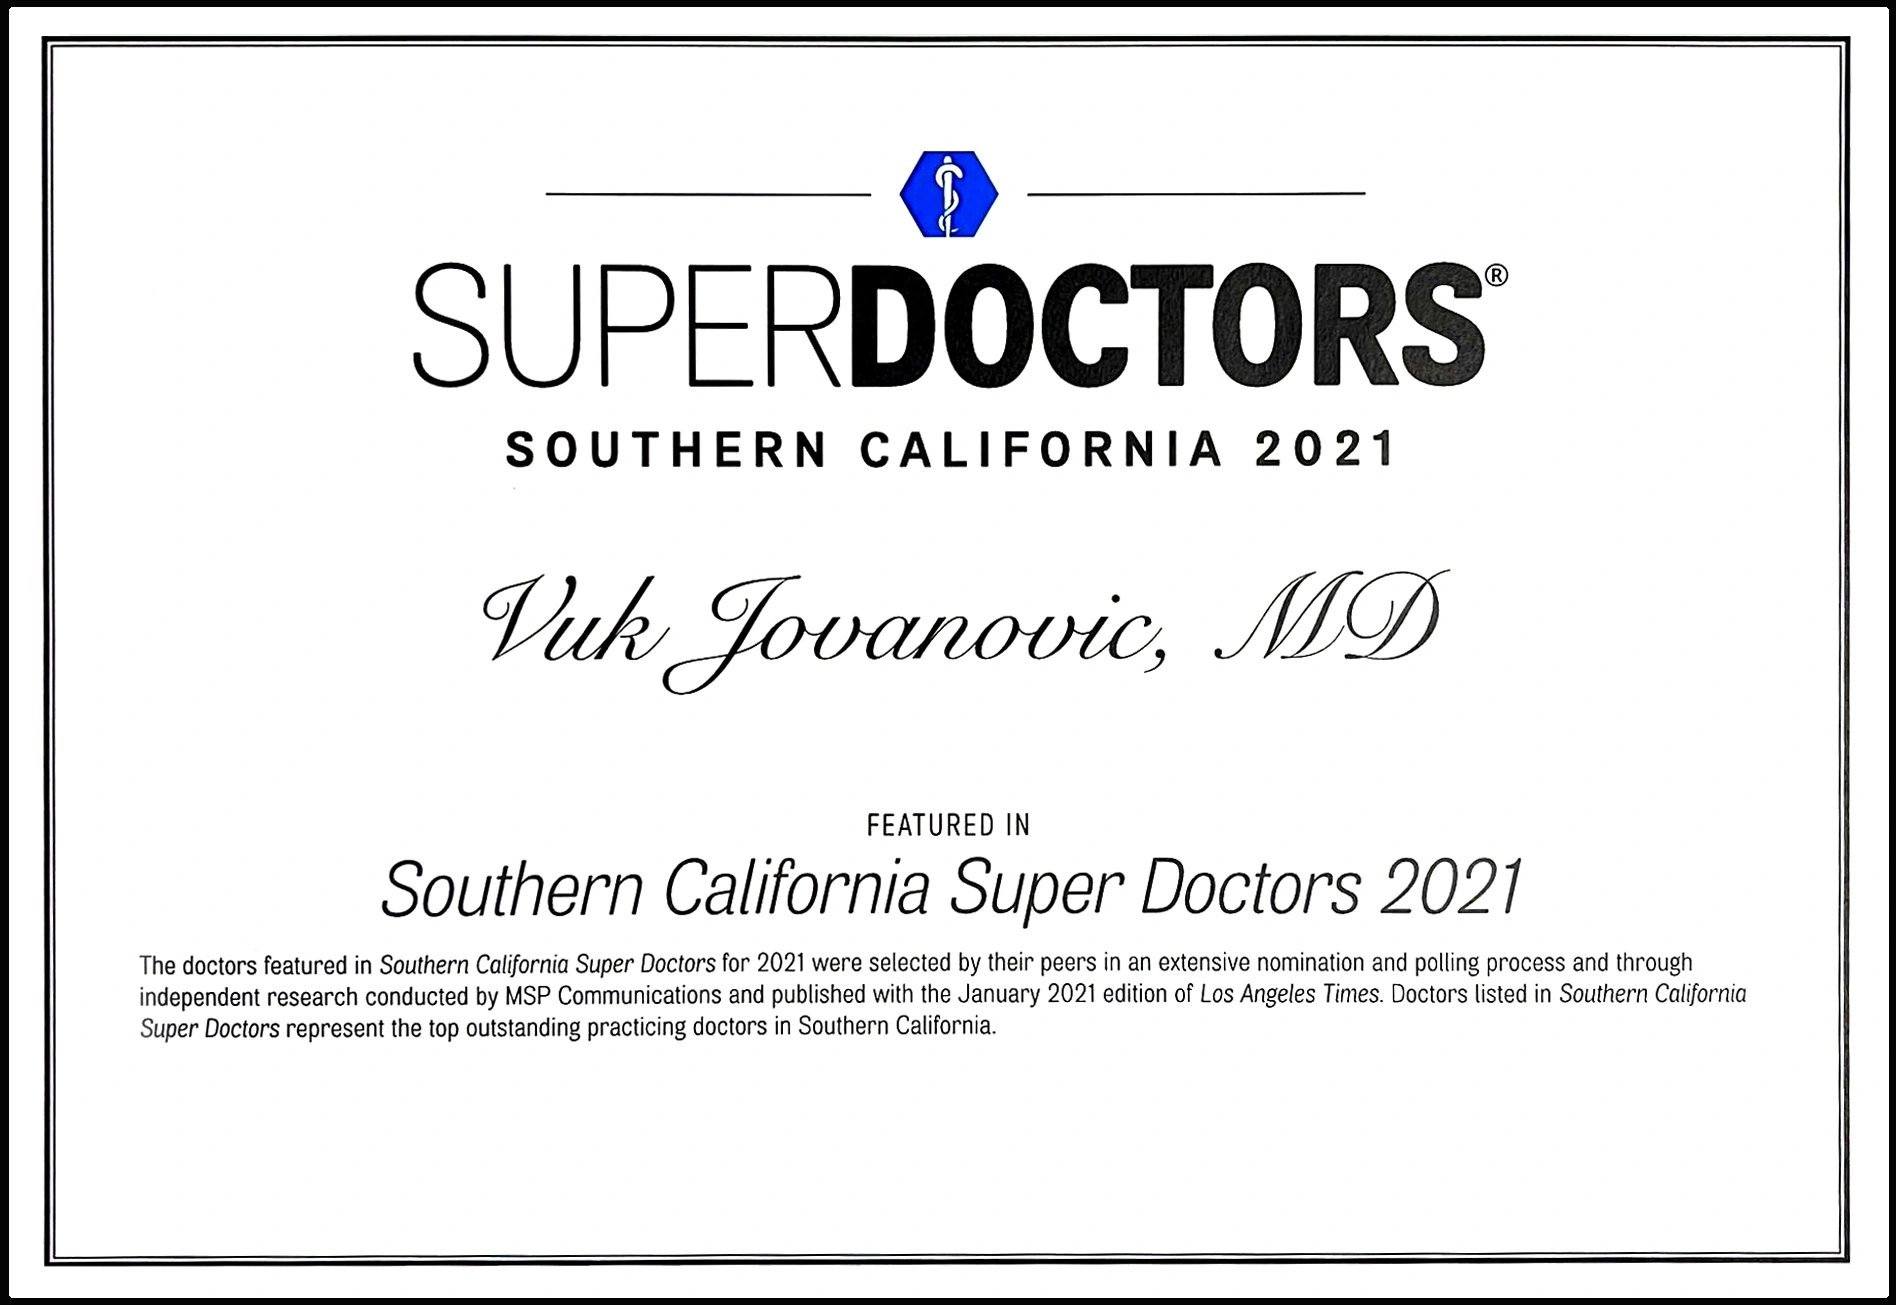 Dr. Vuk Jovanovic, Prix du meilleur docteur 2021 de la Californie du Sud